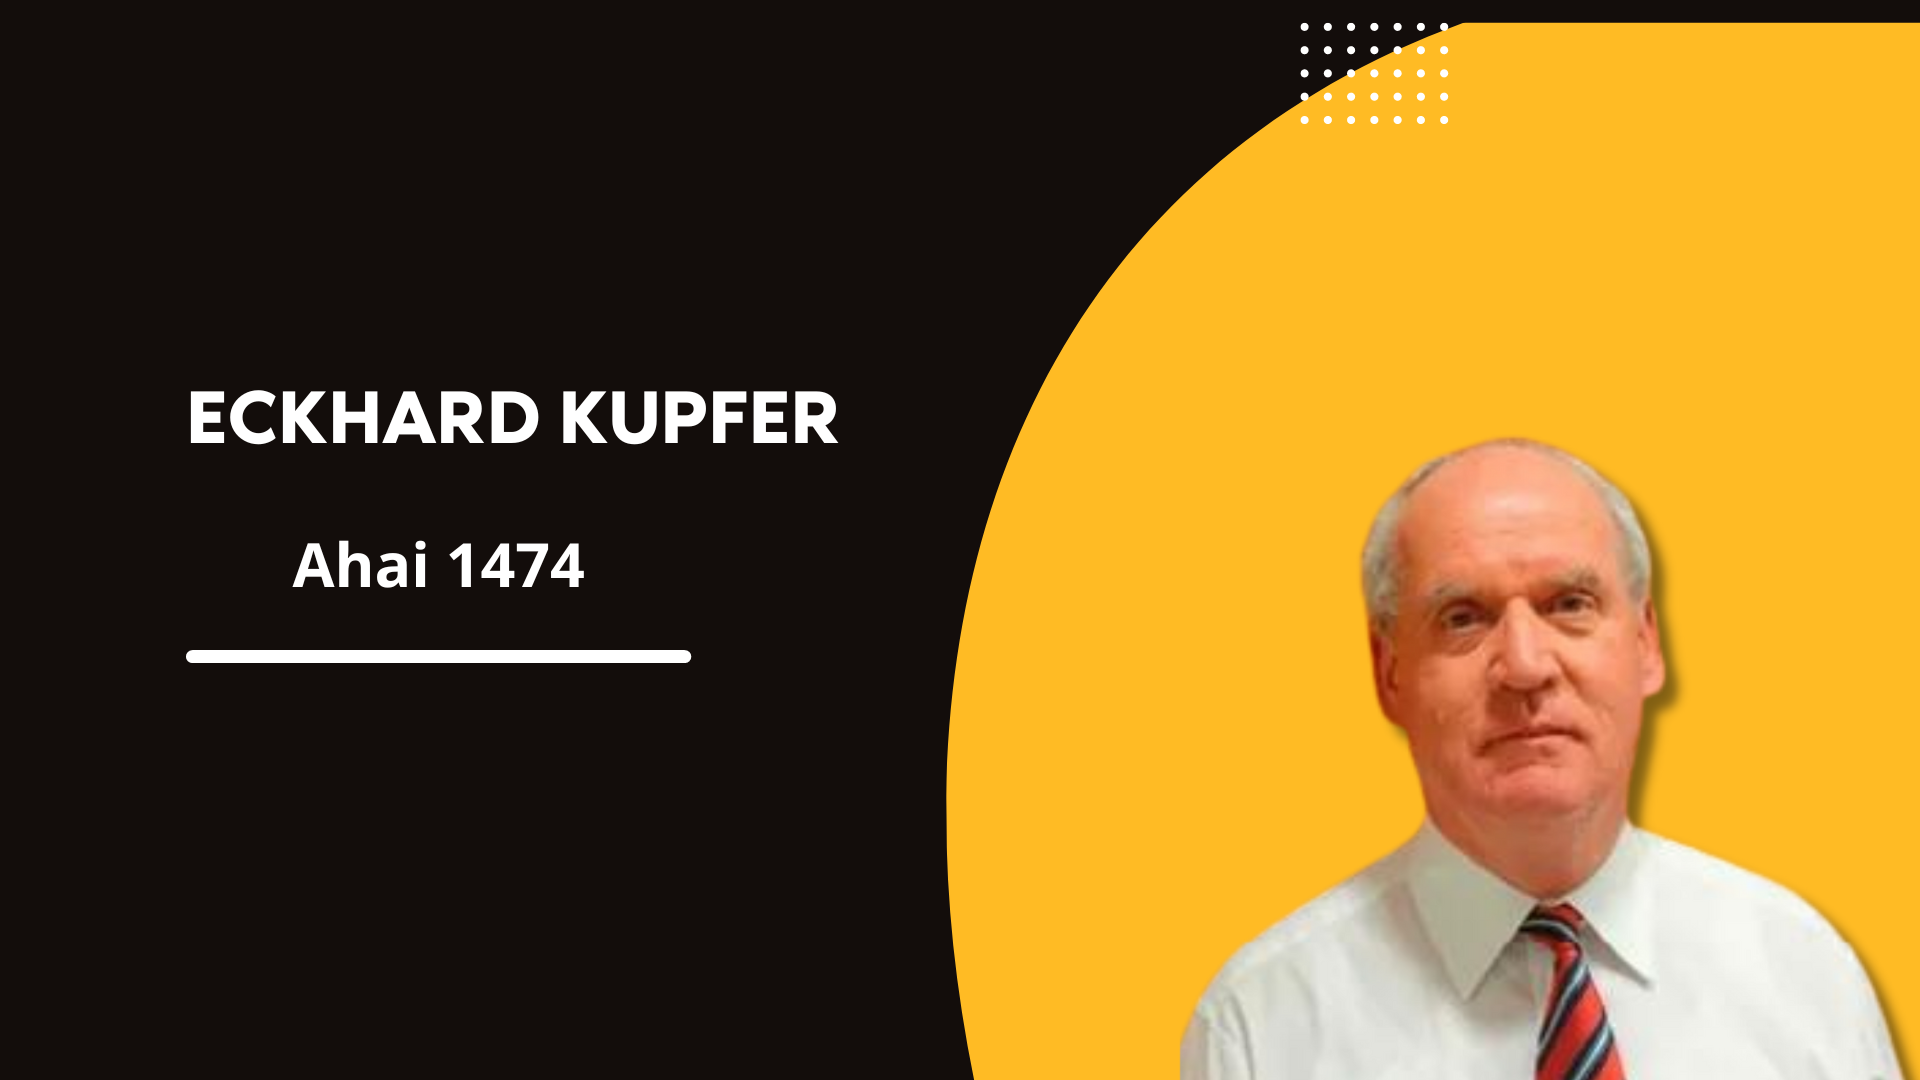 Eckhard Kupfer 1474 | Comentário ahai